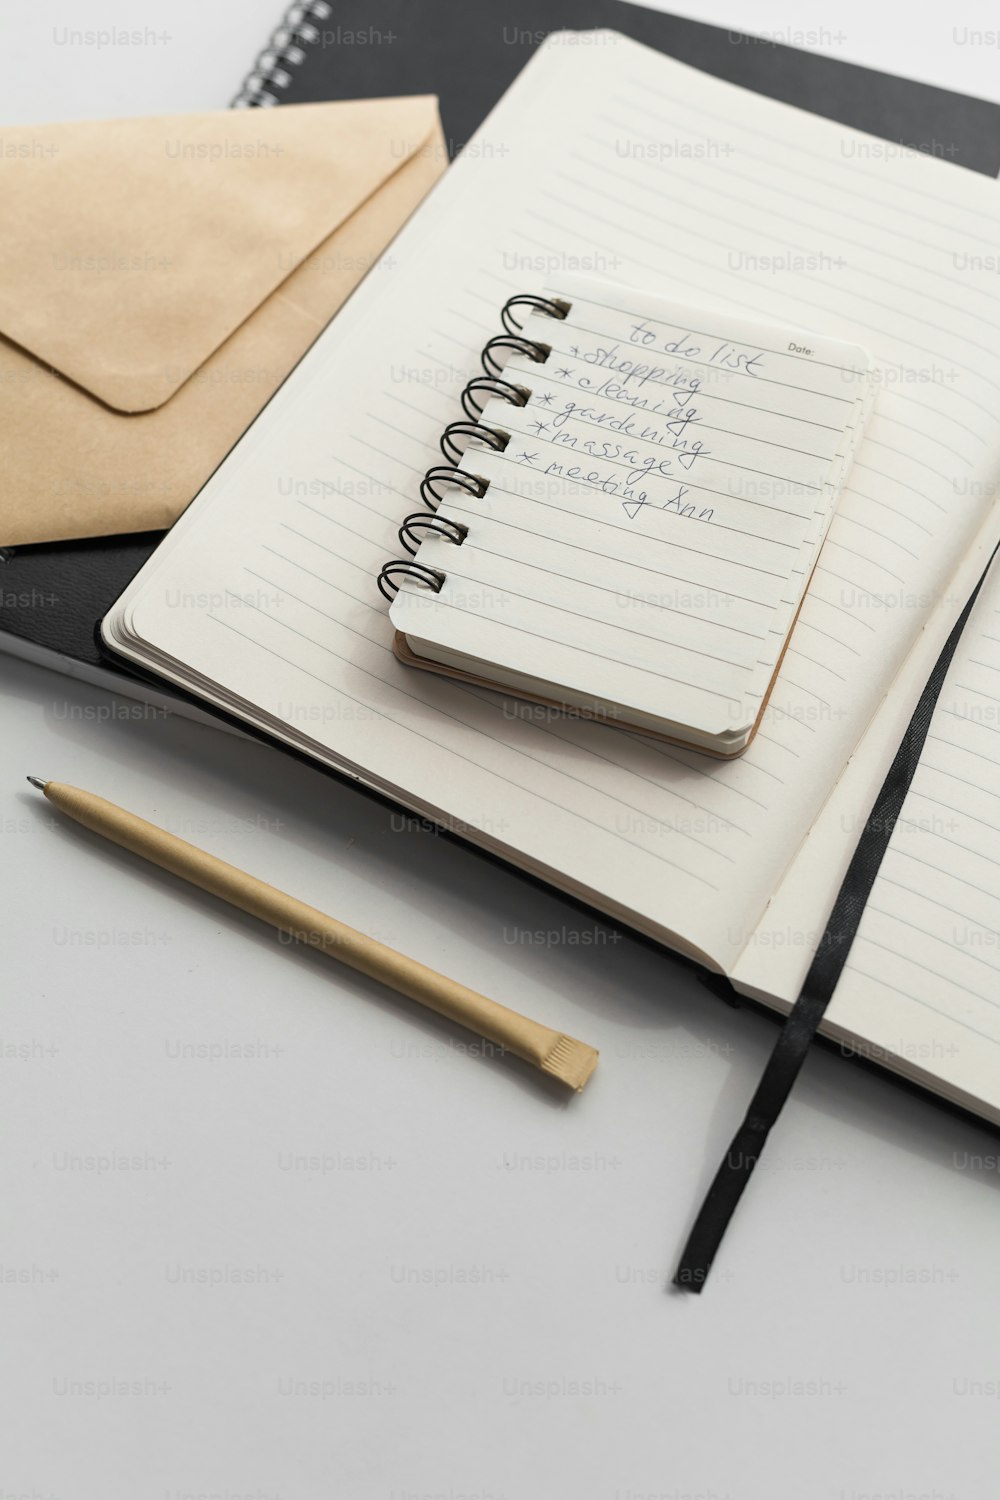 um caderno com um bloco de notas e caneta em cima dele